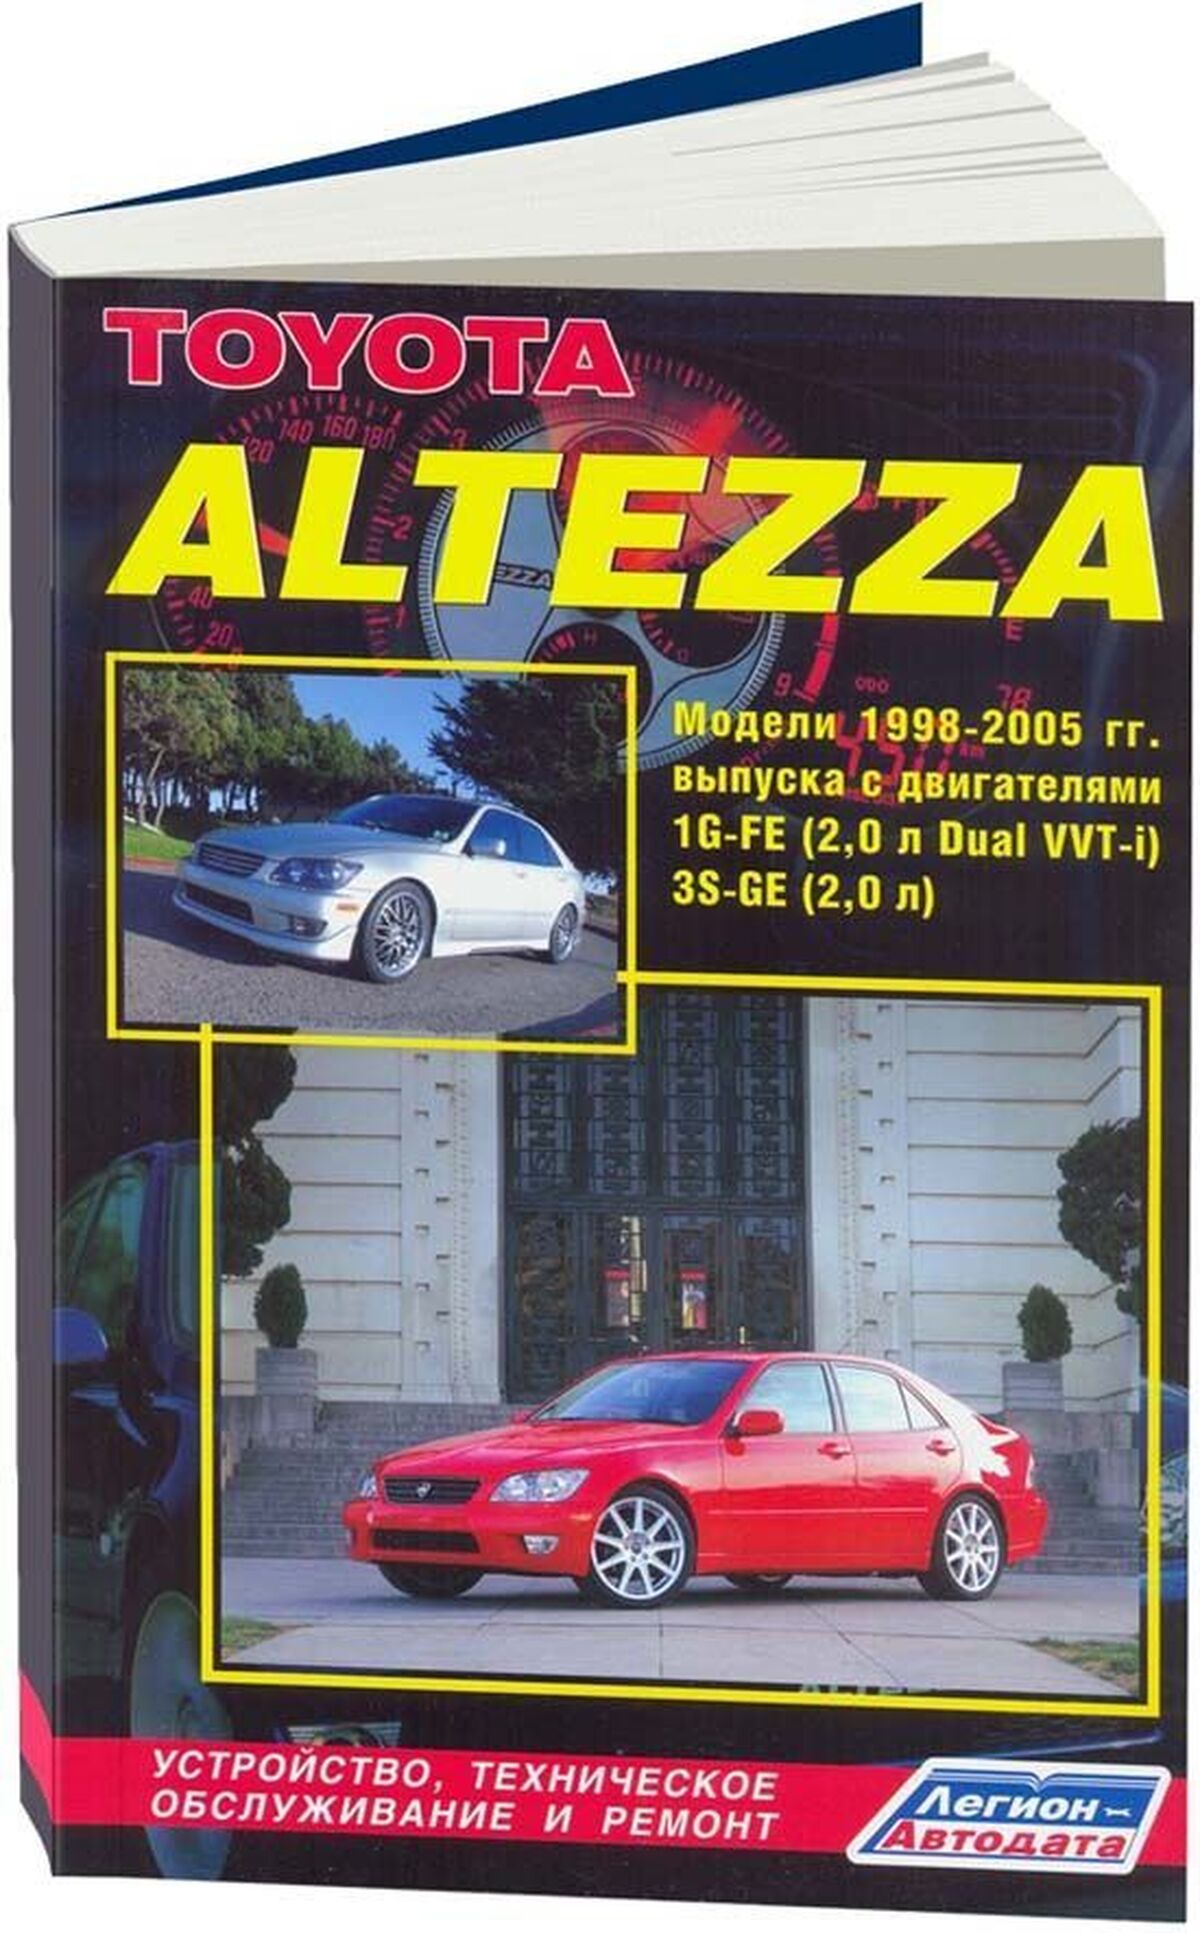 Книга: TOYOTA ALTEZZA и LEXUS IS200 (б) 1998-2005 г.в., рем., экспл., то | Легион-Aвтодата